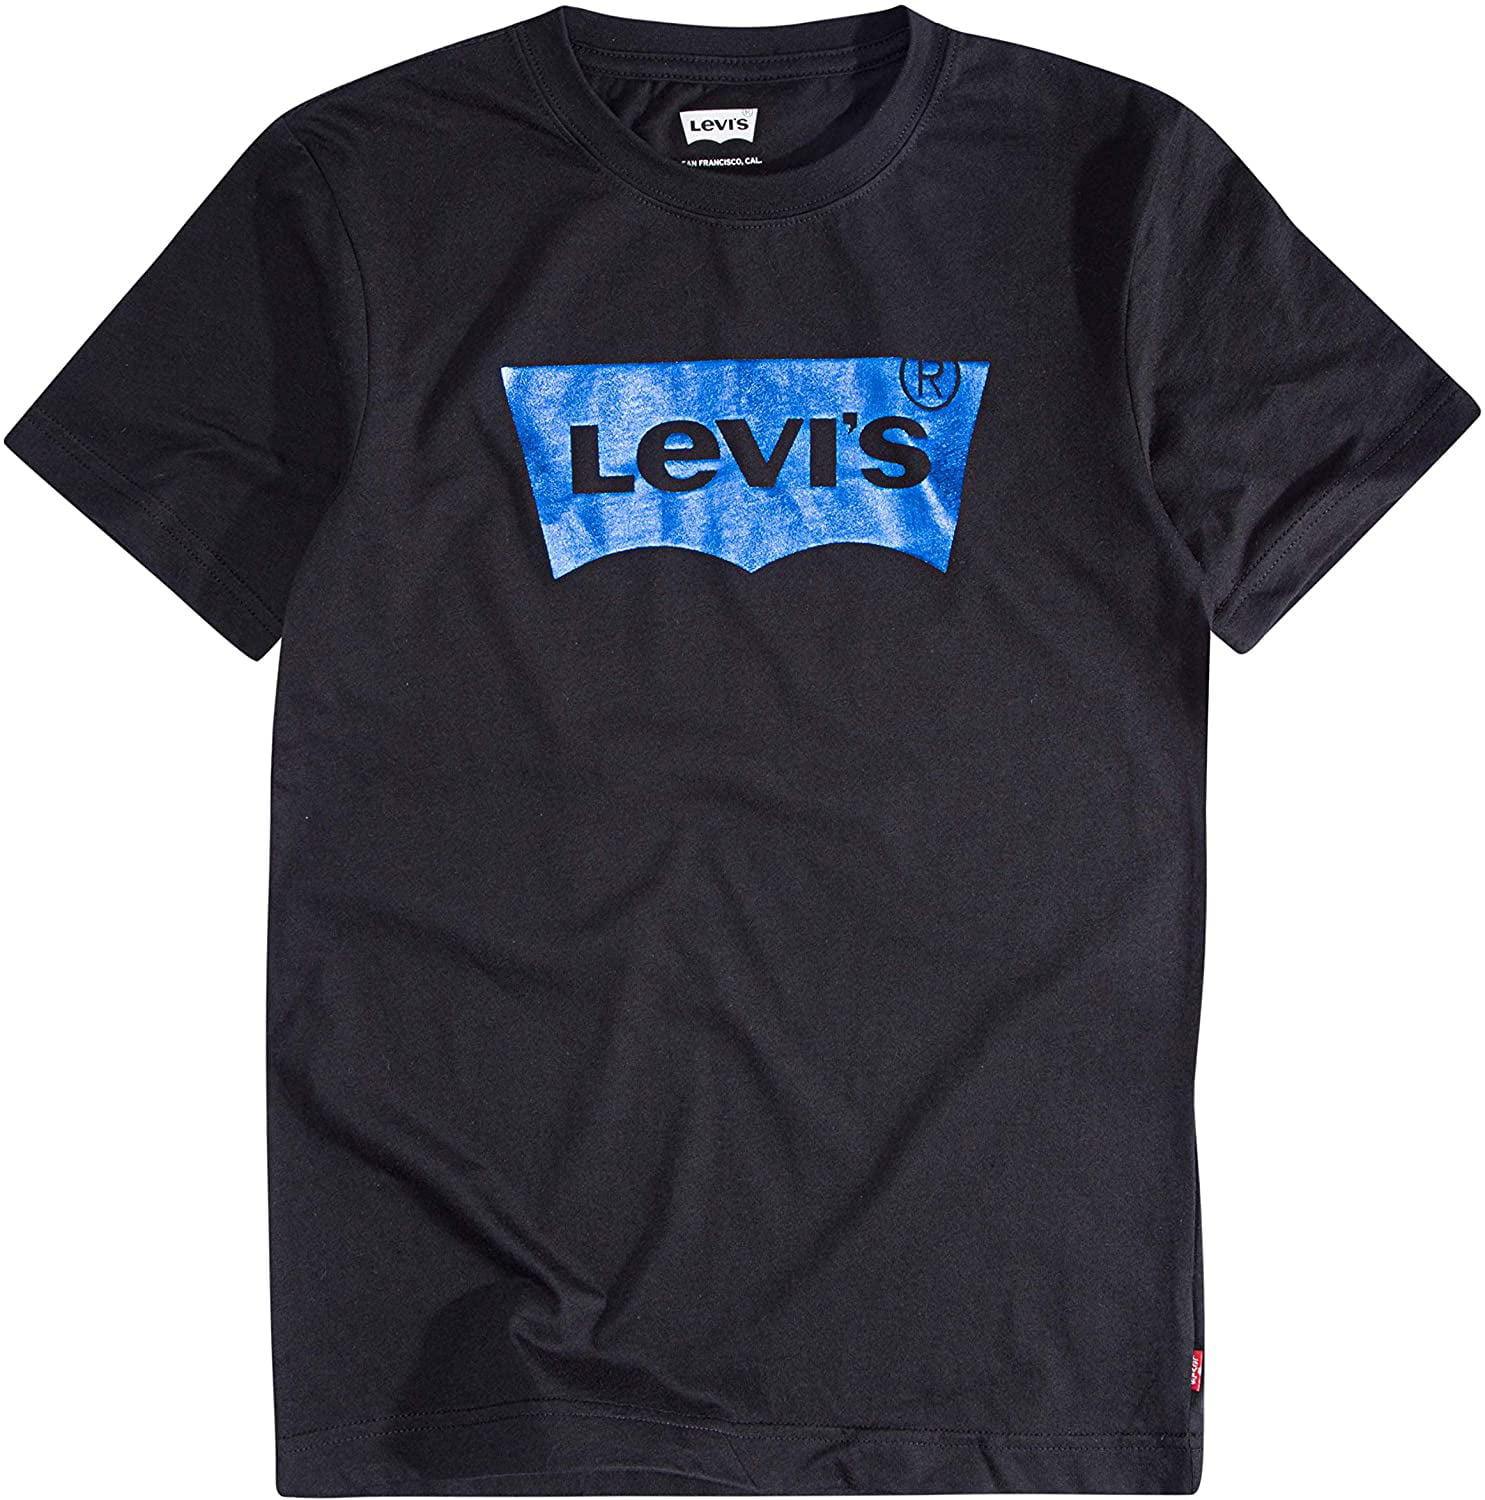 Levi's Boys' Big Embellished Batwing T-Shirt, Black/Blue Foil, S ...